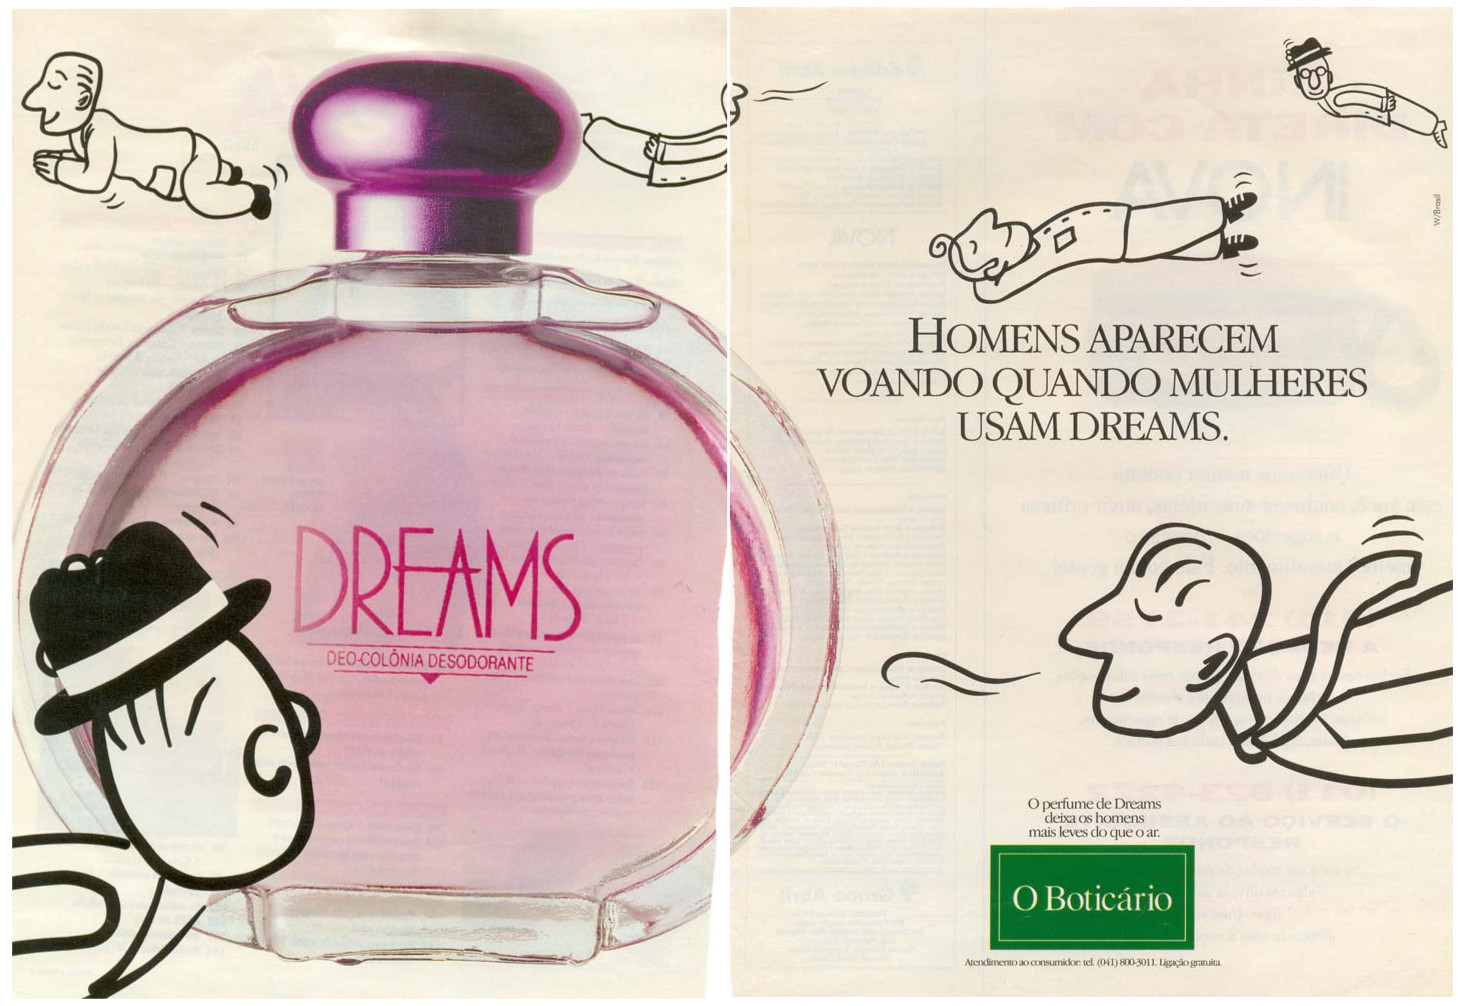 Campanha veiculada em 1993 apresentando o perfume Dreams do O Boticário